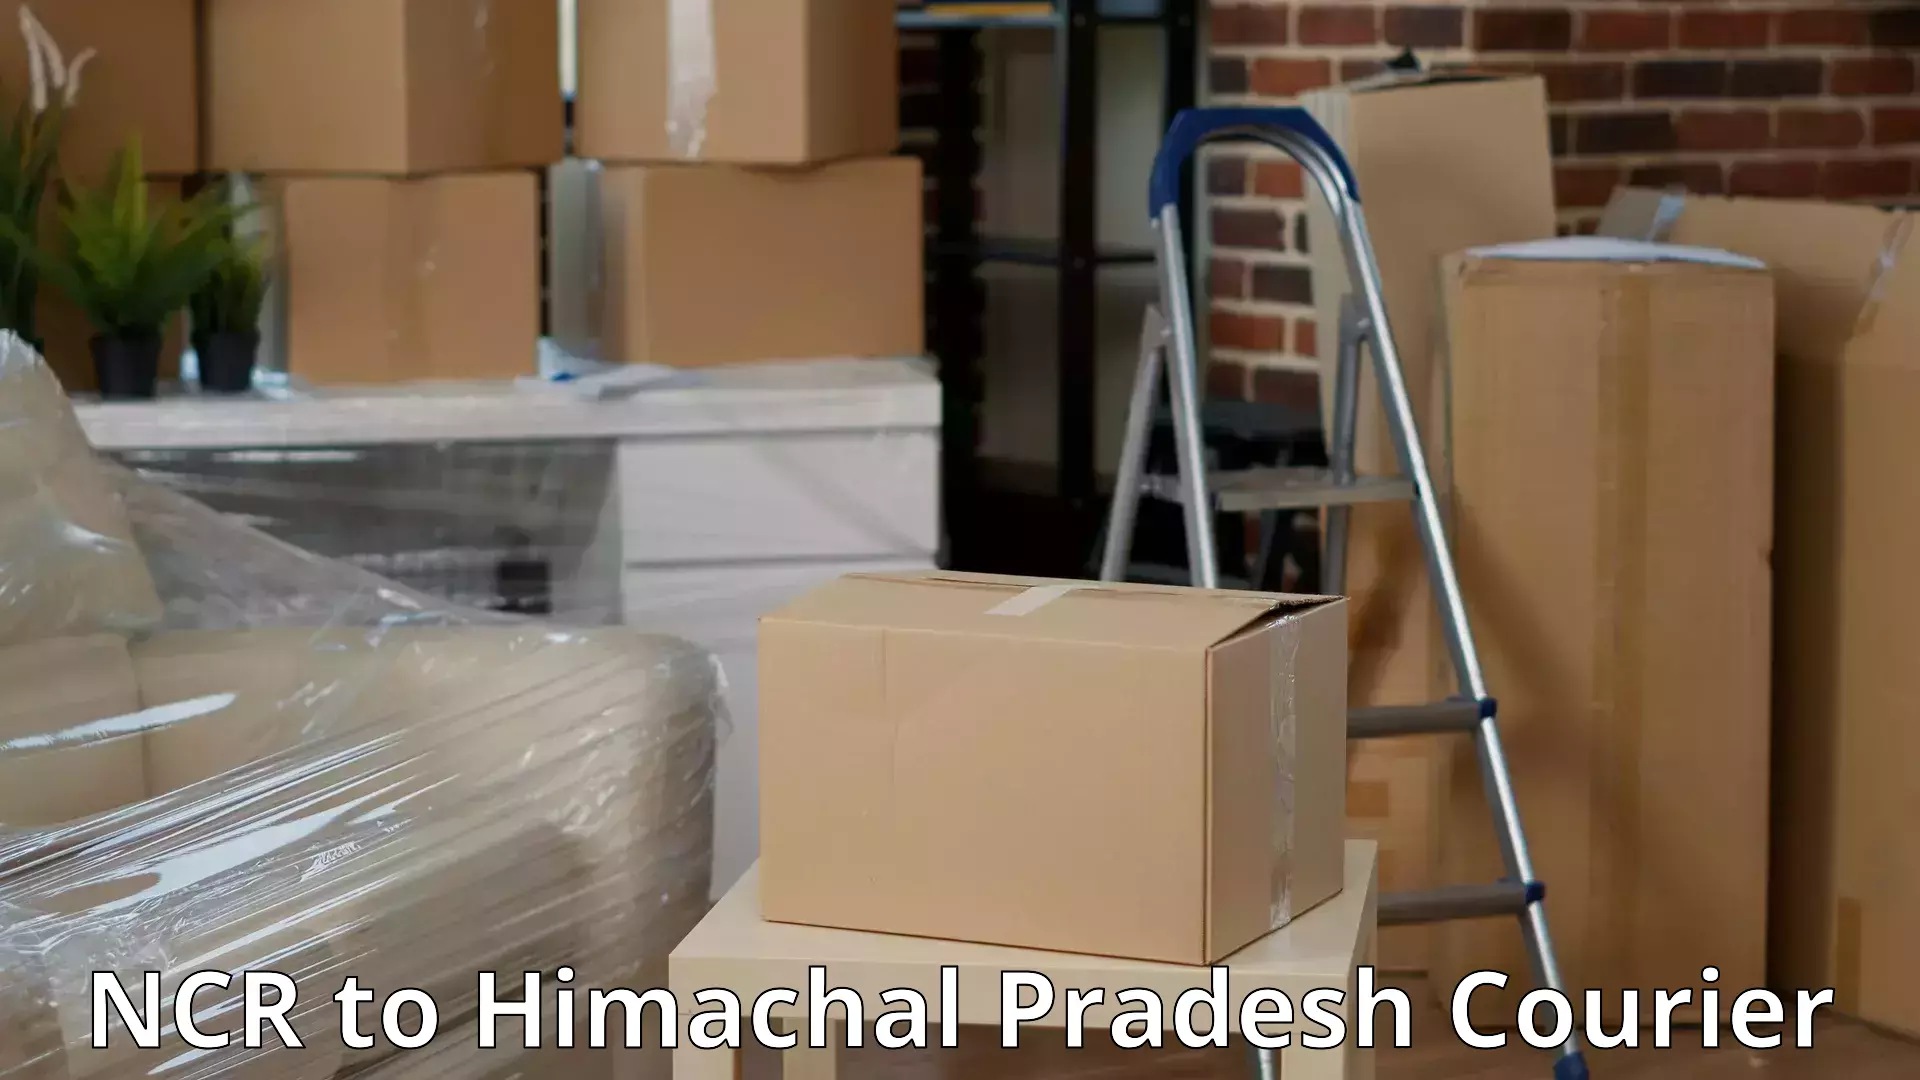 Efficient moving company NCR to Una Himachal Pradesh